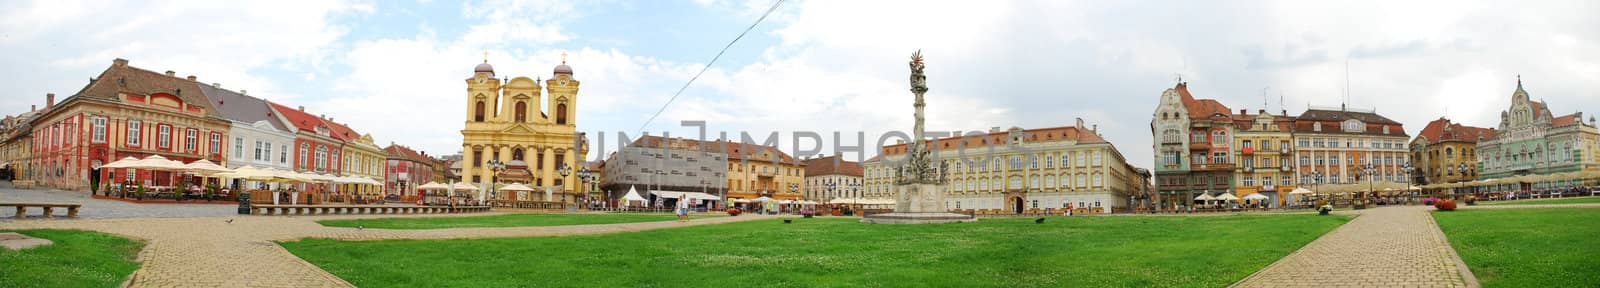 Unirii square in Timisoara. Romanian city. Panorama.
